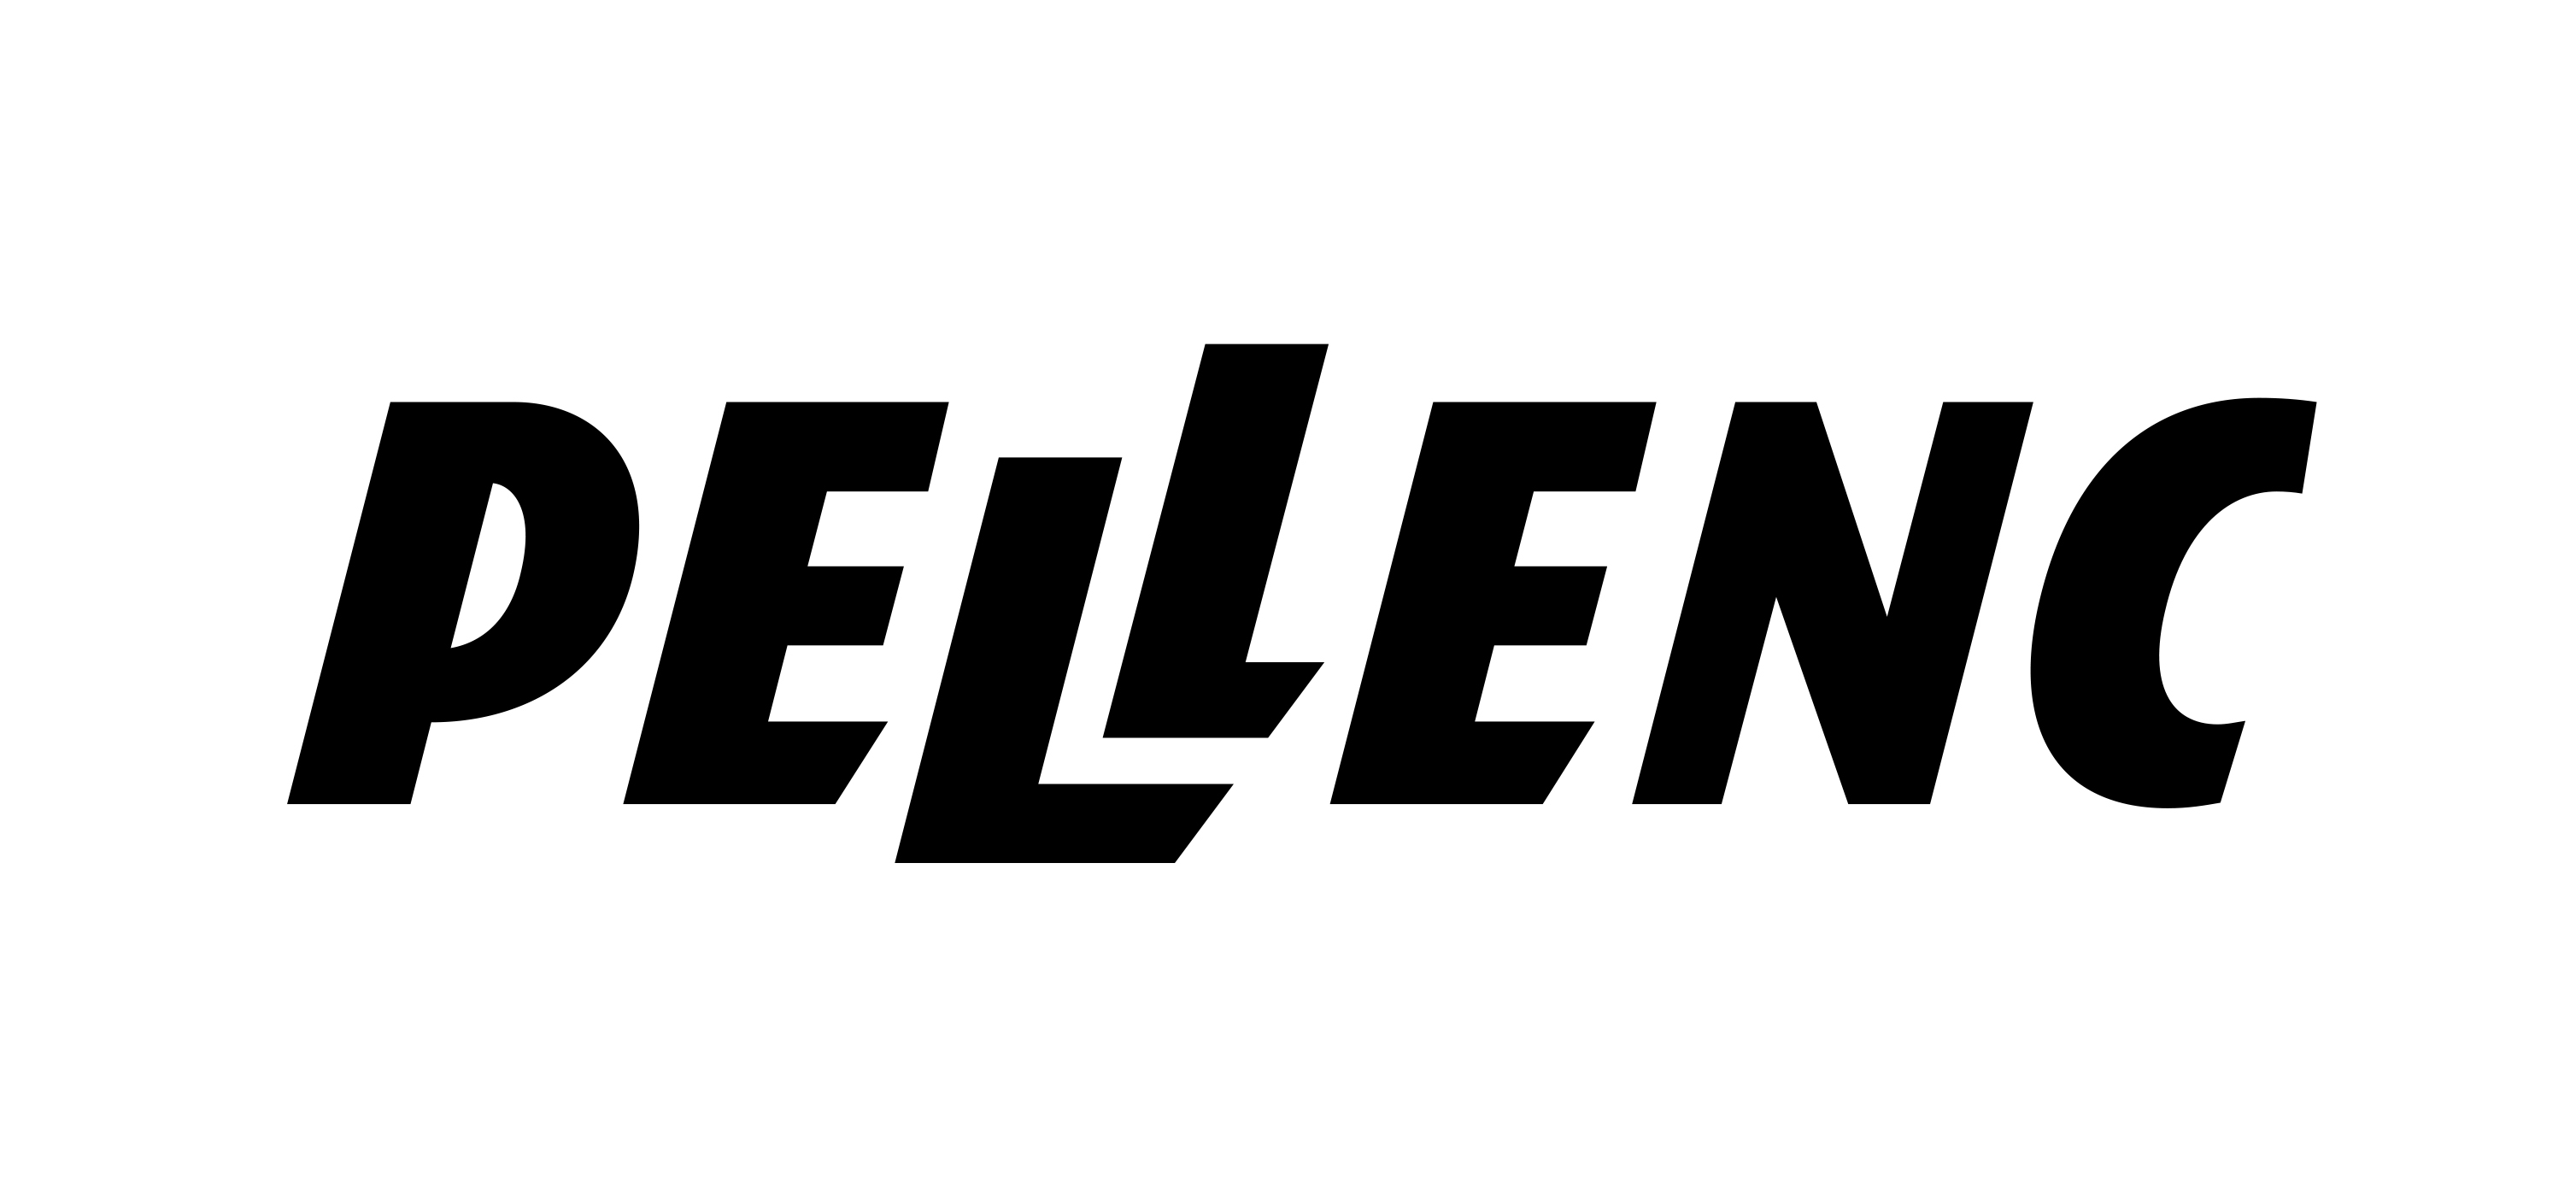 Pellenc_logo.jpeg